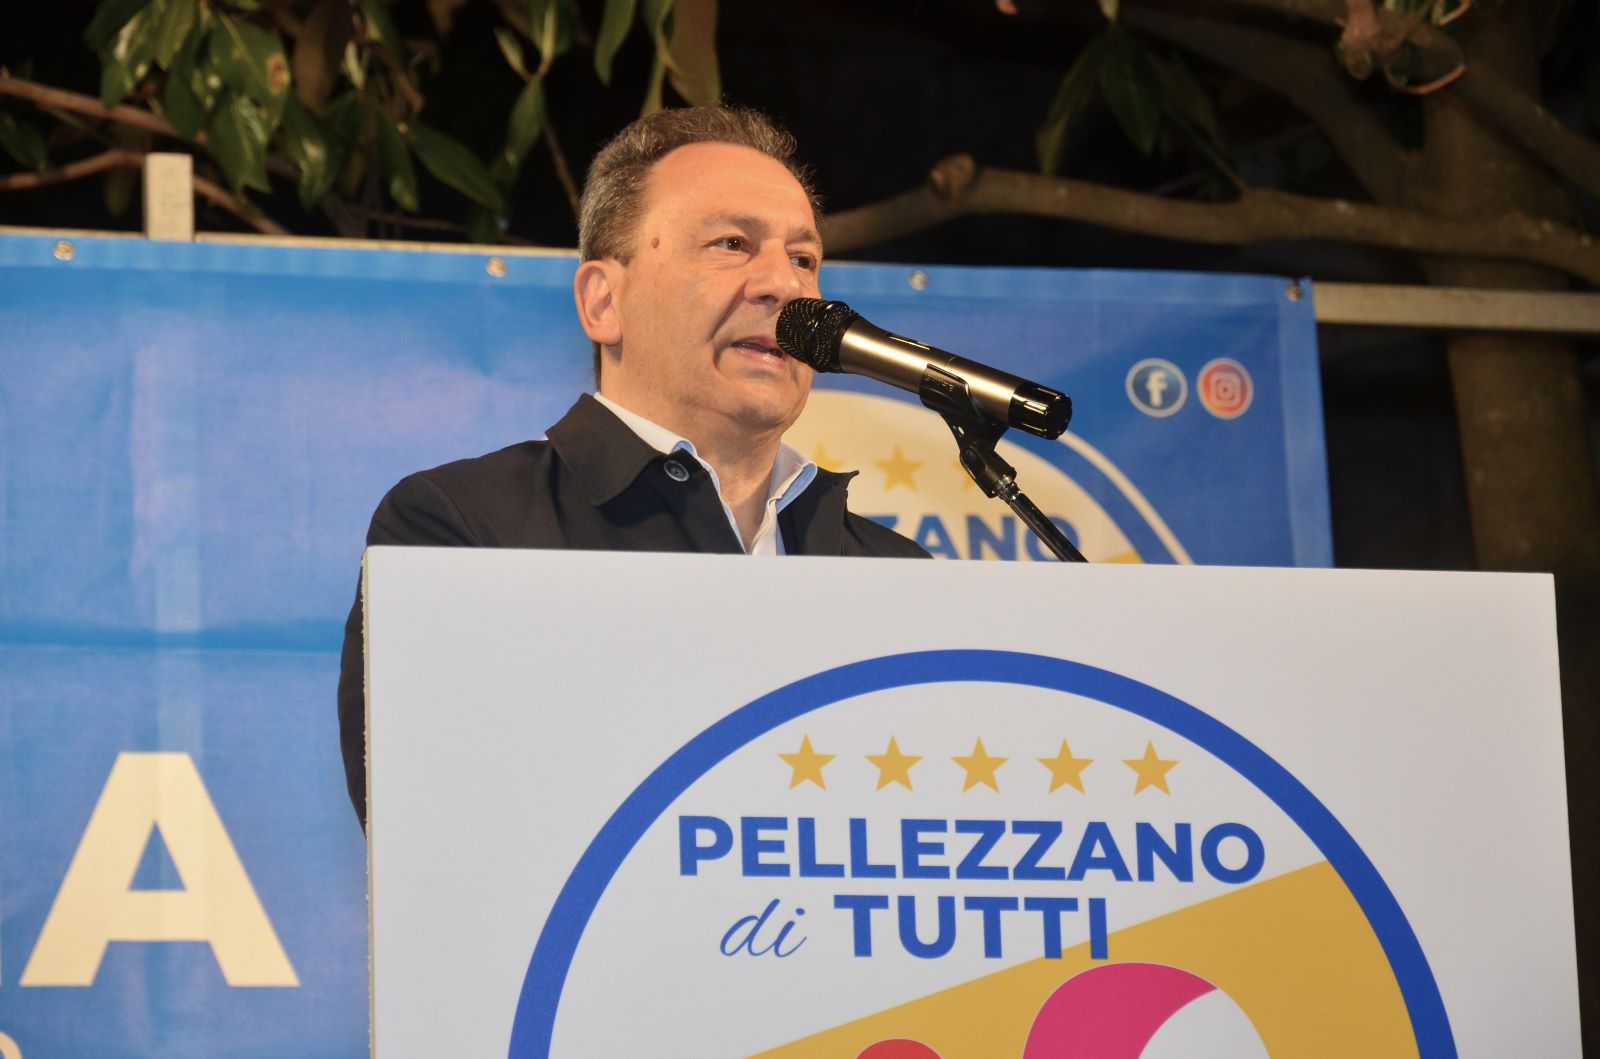 Pellezzano: Amministrative, candidato Sindaco Pisapia “Prima si è uomini, poi il resto!”